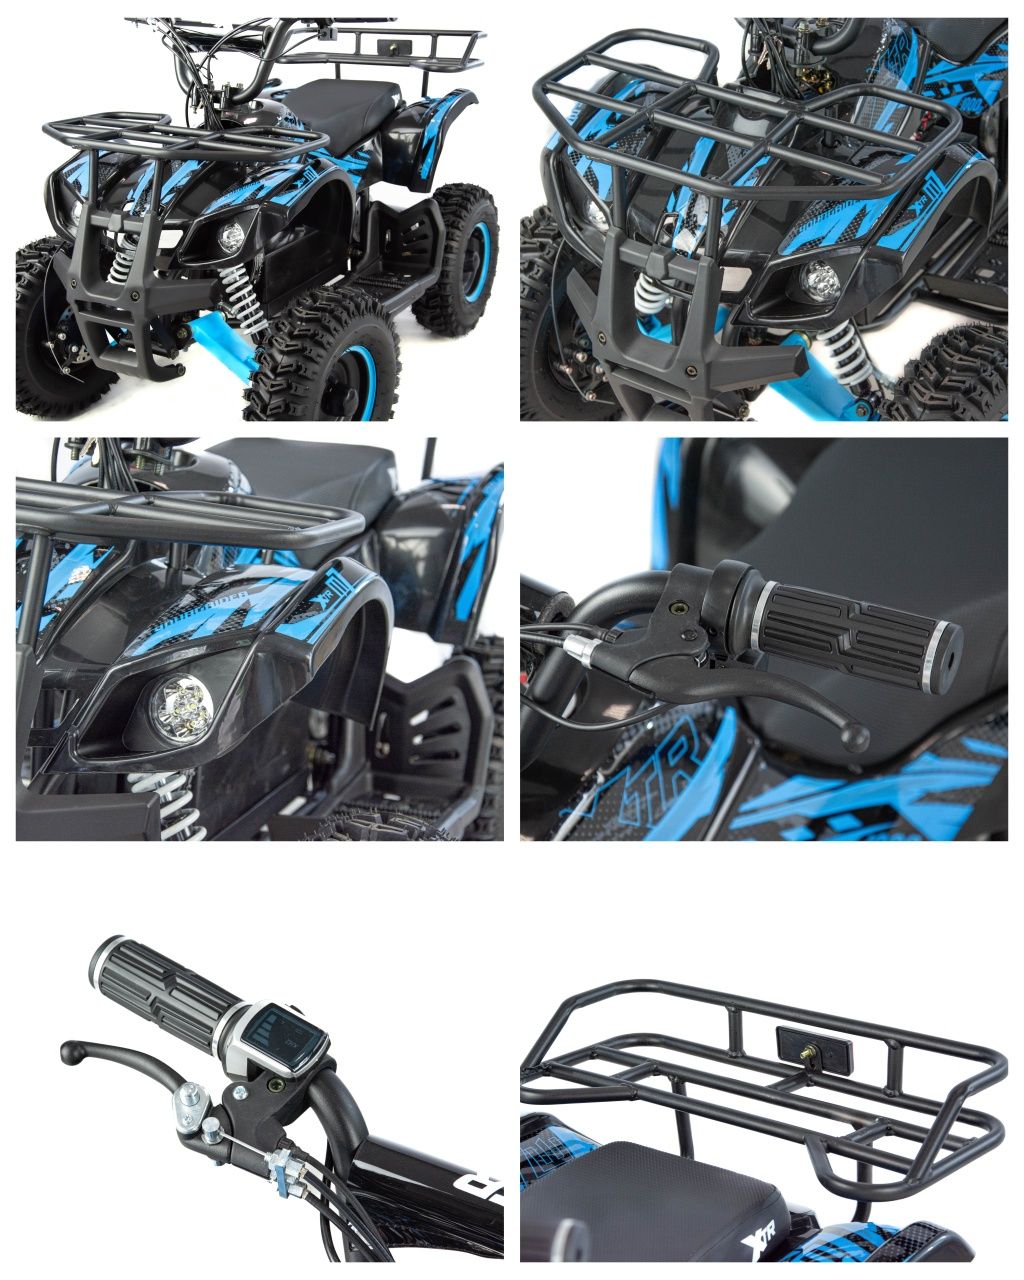 Mini Quad ATV elektryczny dla dzieci 1000W XTR E-M7